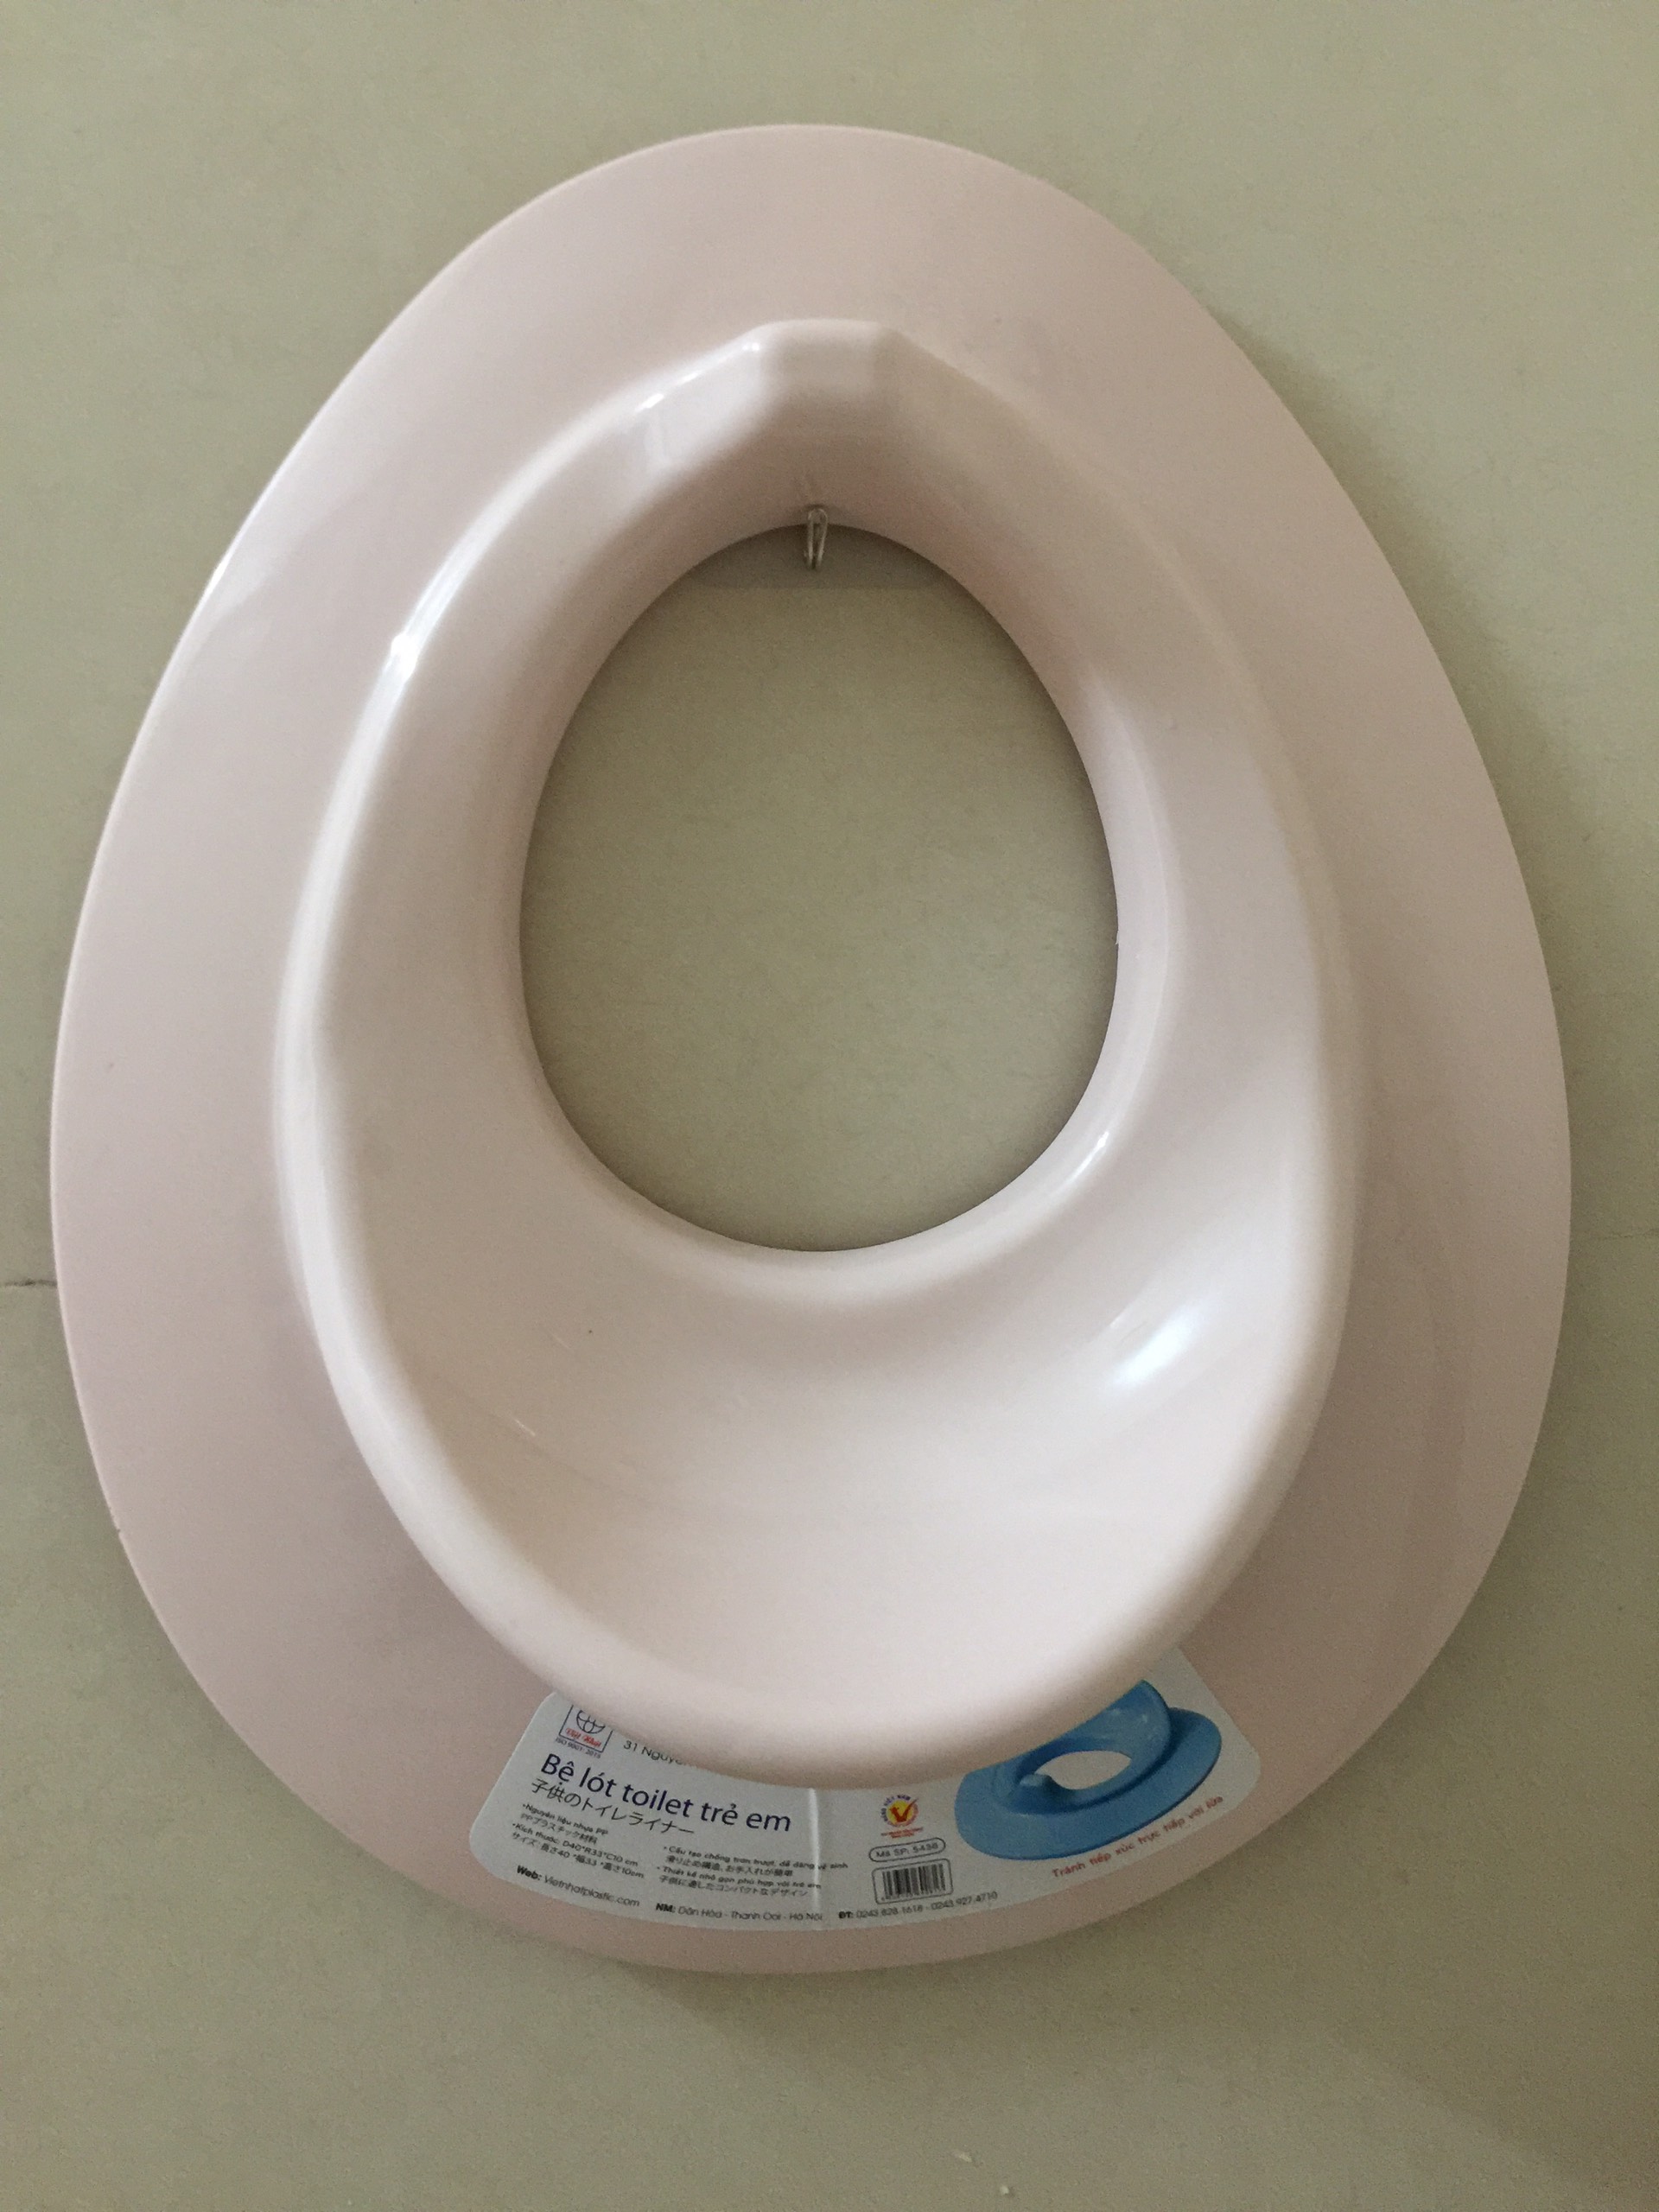 [Hàng loại 1] Bệ lót thu nhỏ bồn cầu/ bô vệ sinh cho bé tập đi vệ sinh an toàn/Nắp thu nhỏ bồn cầu cho bé/Bệ ngồi toilet, bệ ngồi bồn cầu (Màu ngẫu nhiên)